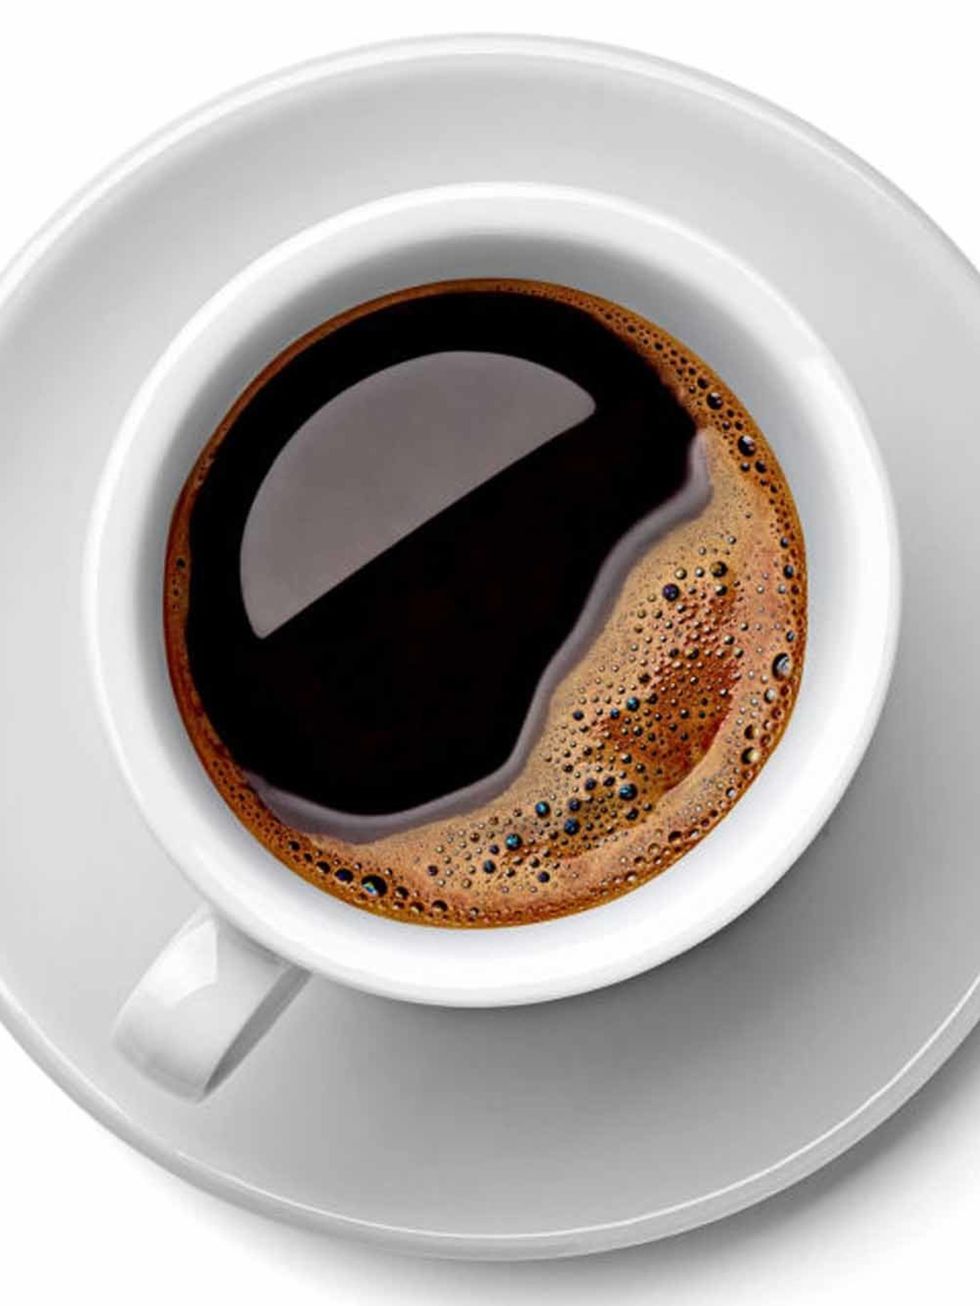 Cup, Coffee cup, Serveware, Drinkware, Dishware, Drink, Coffee, Teacup, Espresso, Tableware, 